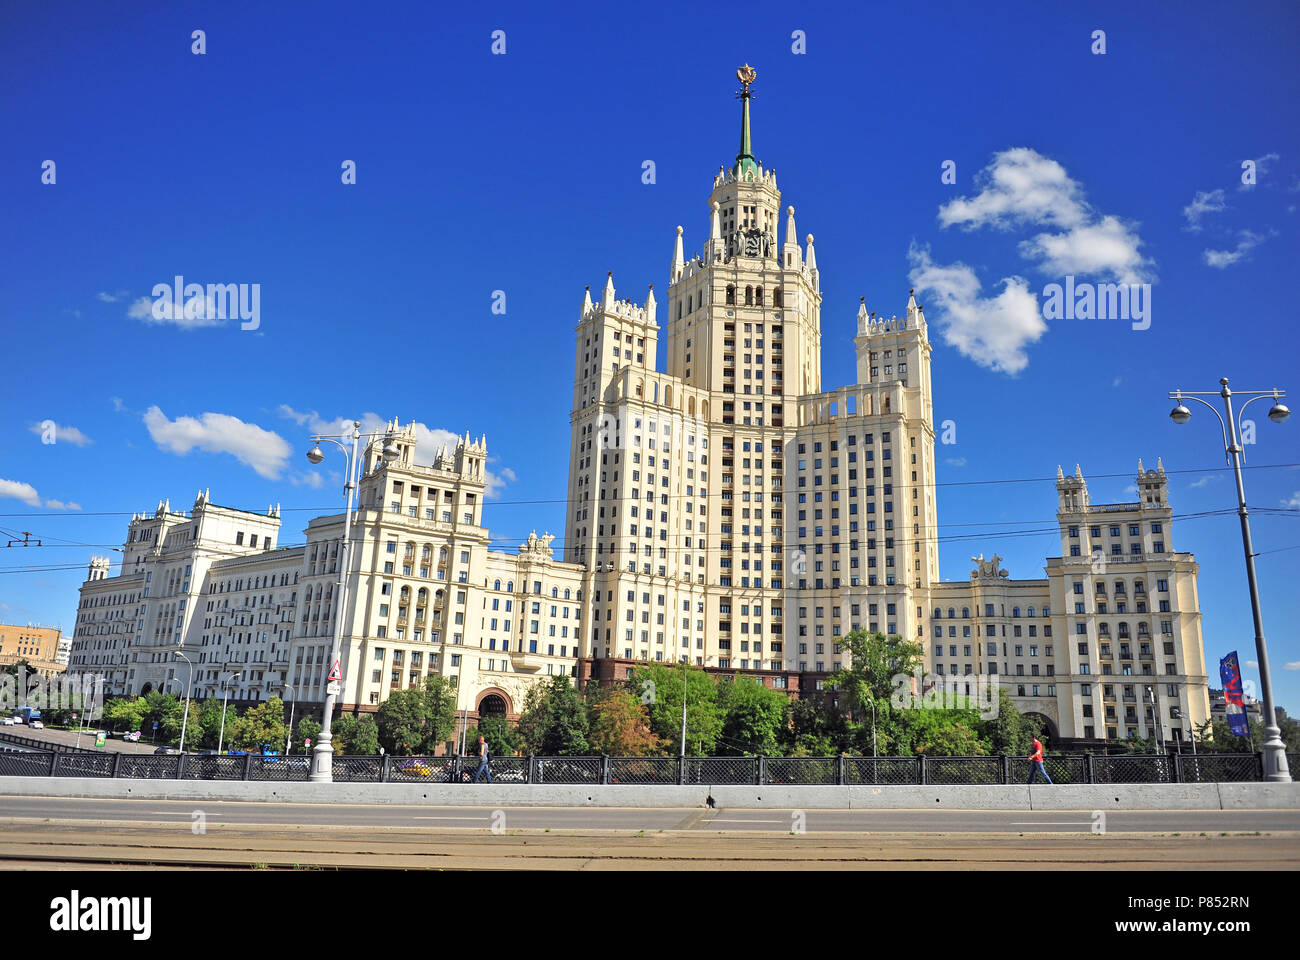 Mosca, Russia - Luglio 02: vista dell'edificio in Stalin Impero stile architettonico, Mosca, Russia il 2 luglio 2018. Foto Stock